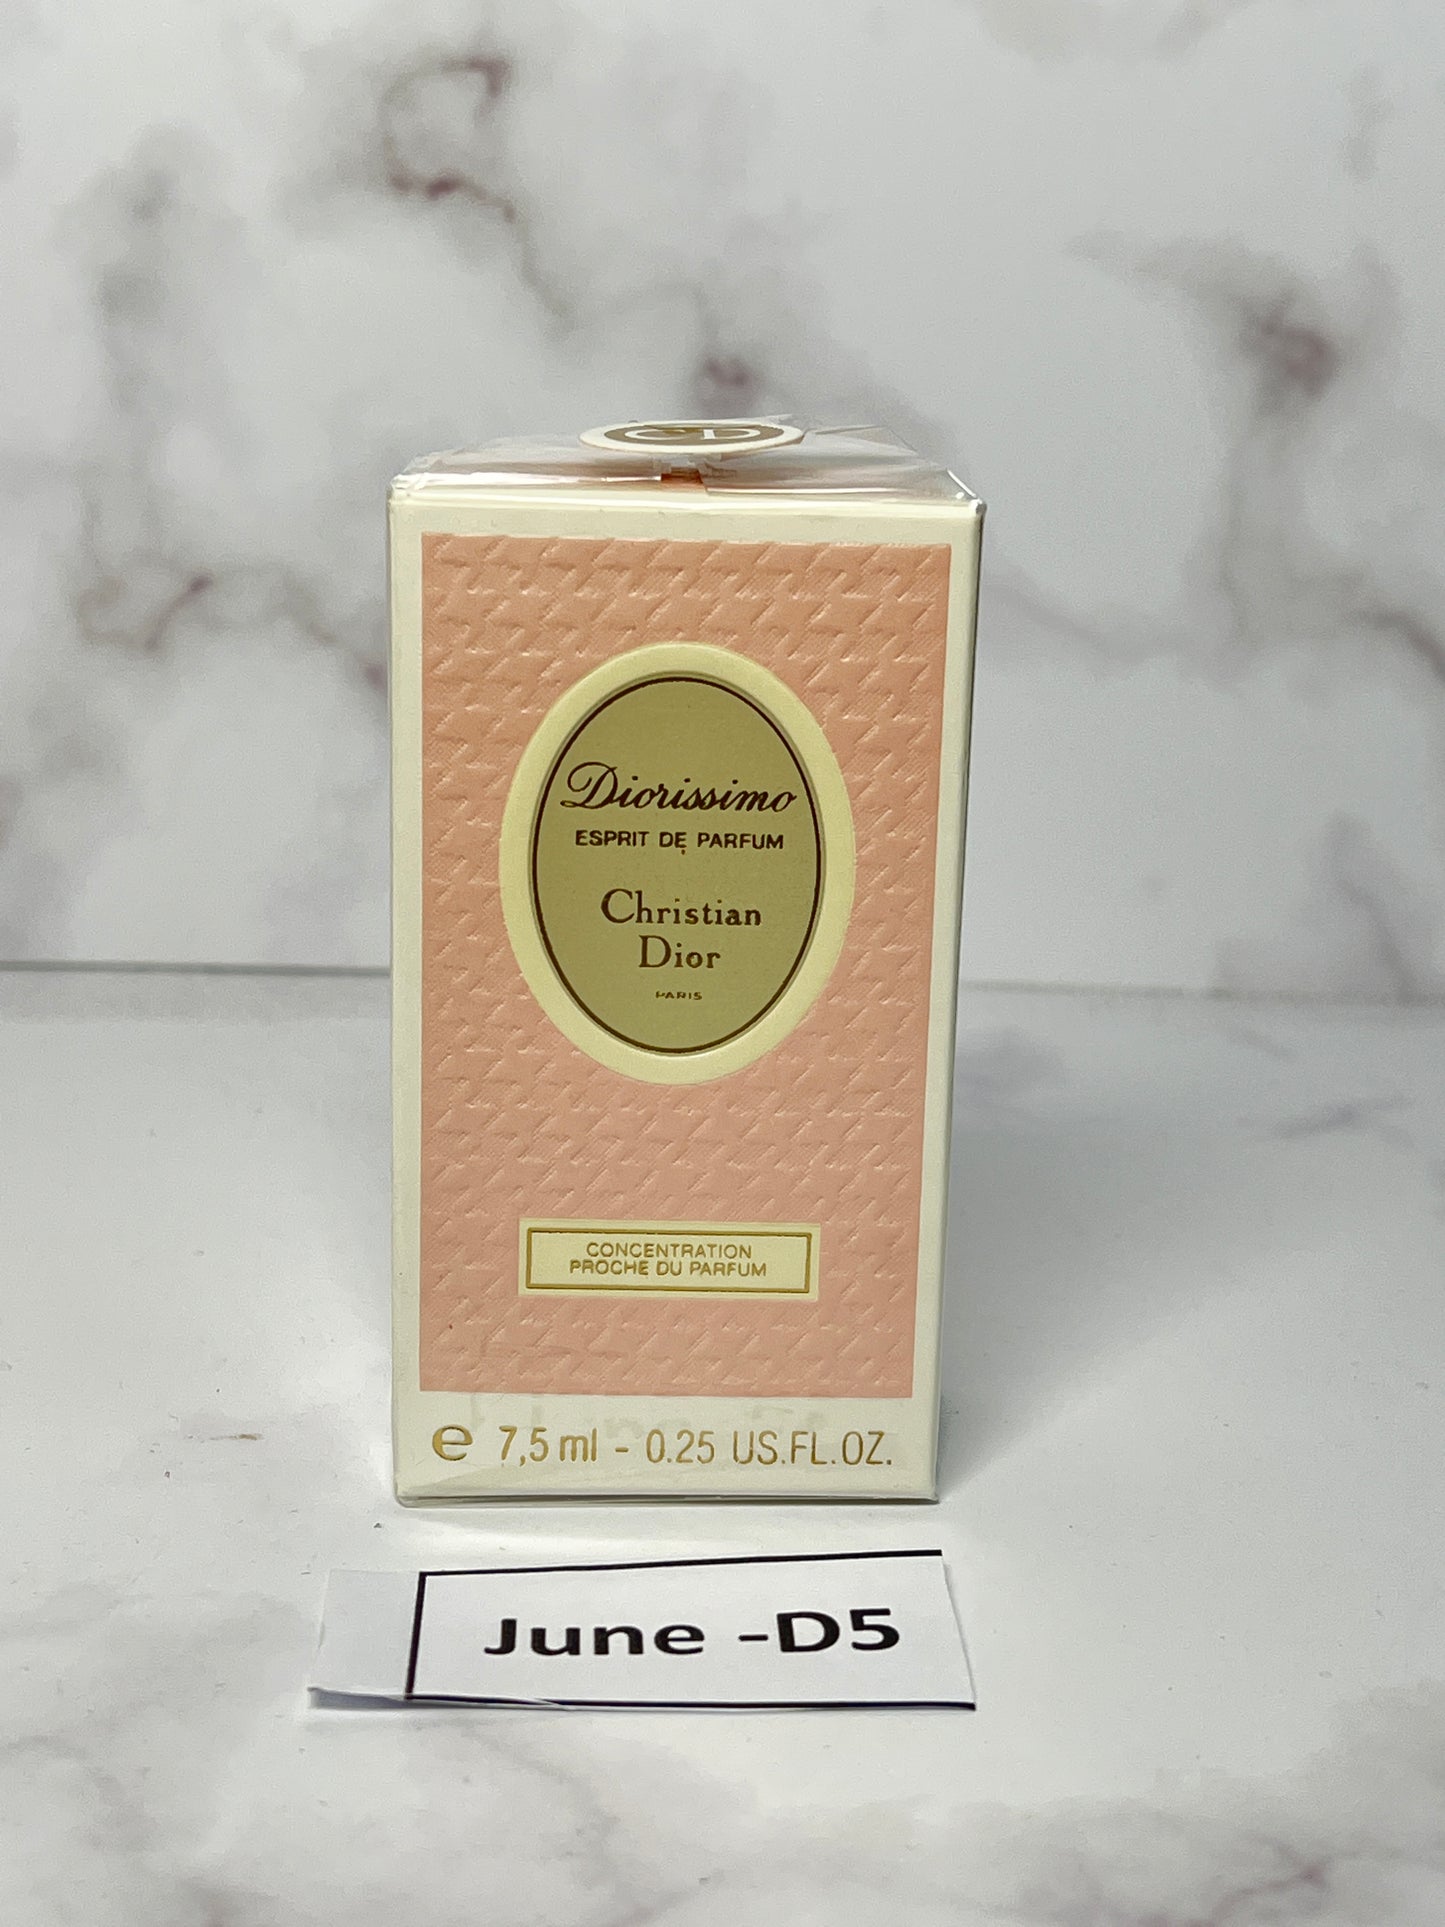 Rare Sealed Christian Dior Diorissimo 7.5 ml 1/4 oz Parfum Esprit de parfum  - JUNE-D5